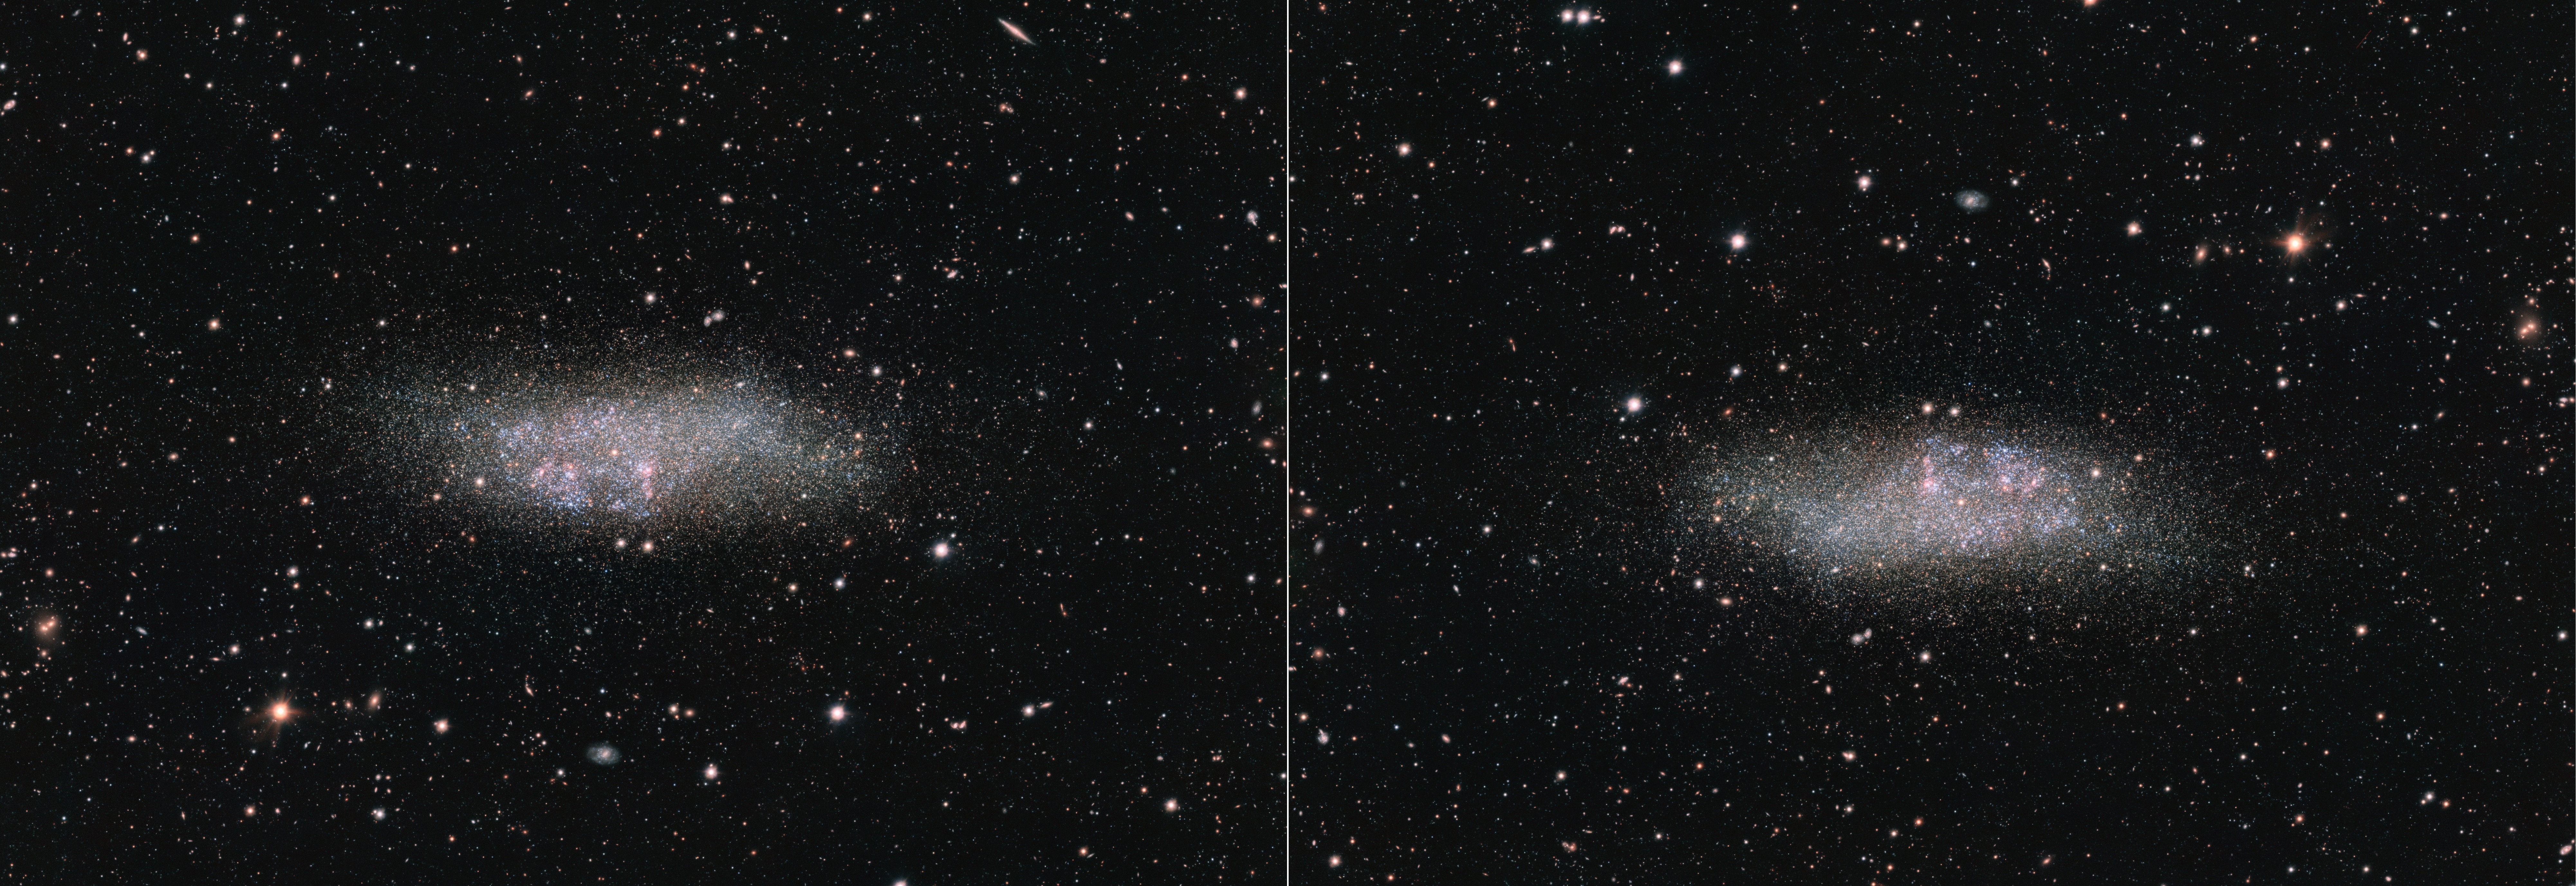 Zdjęcie samotnej galaktyki Wolf-Lundmark-Melotte (w skrócie WLM) uzyskane za pomocą teleskopu VLT (ang. Very Large Telescope) w Obserwatorium Paranal, Chile. Oryginalne zdjęcie ESO (po lewej) zostało odwrócone o 180° (zdjęcie po prawej, tutaj: północ–po lewej, wschód–na dole), aby być zgodnym położeniem kadru na zdjęciu wykonanym przez Kosmiczny Teleskop Jamesa Webba. WLM jest członkiem Lokalnej Grupy Galaktyk, ale znajduje się na jej obrzeżach w odosobnionym miejscu ~3 miliony l.św. od nas. Dlatego przypuszcza się, że mogła nigdy nie oddziaływać z innymi galaktykami w naszej grupie lub w ogóle w historii Wszechświata. Źródło: ESO